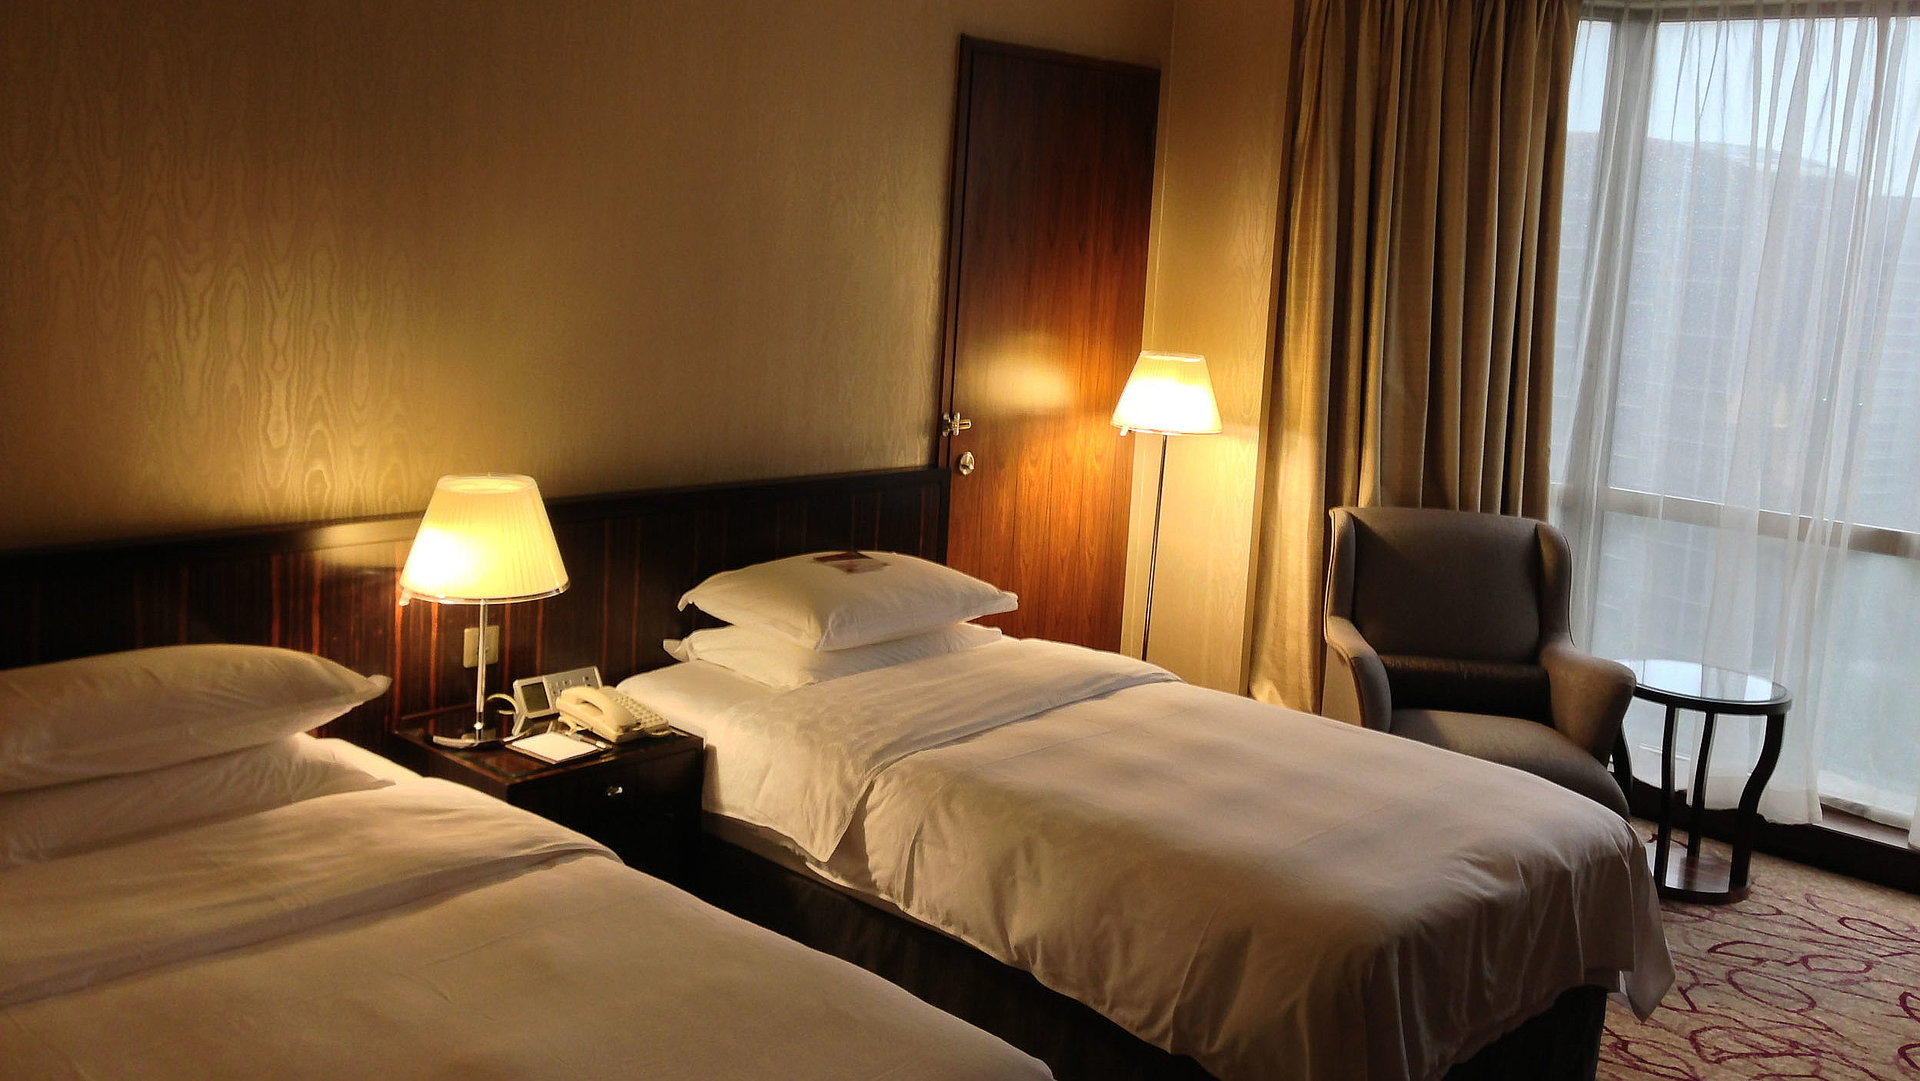 Unterkunft in Mittelfranken - sehr ordentliches Hotelzimmer mit zwei Betten, warmer Nachtlampe und Gardinen